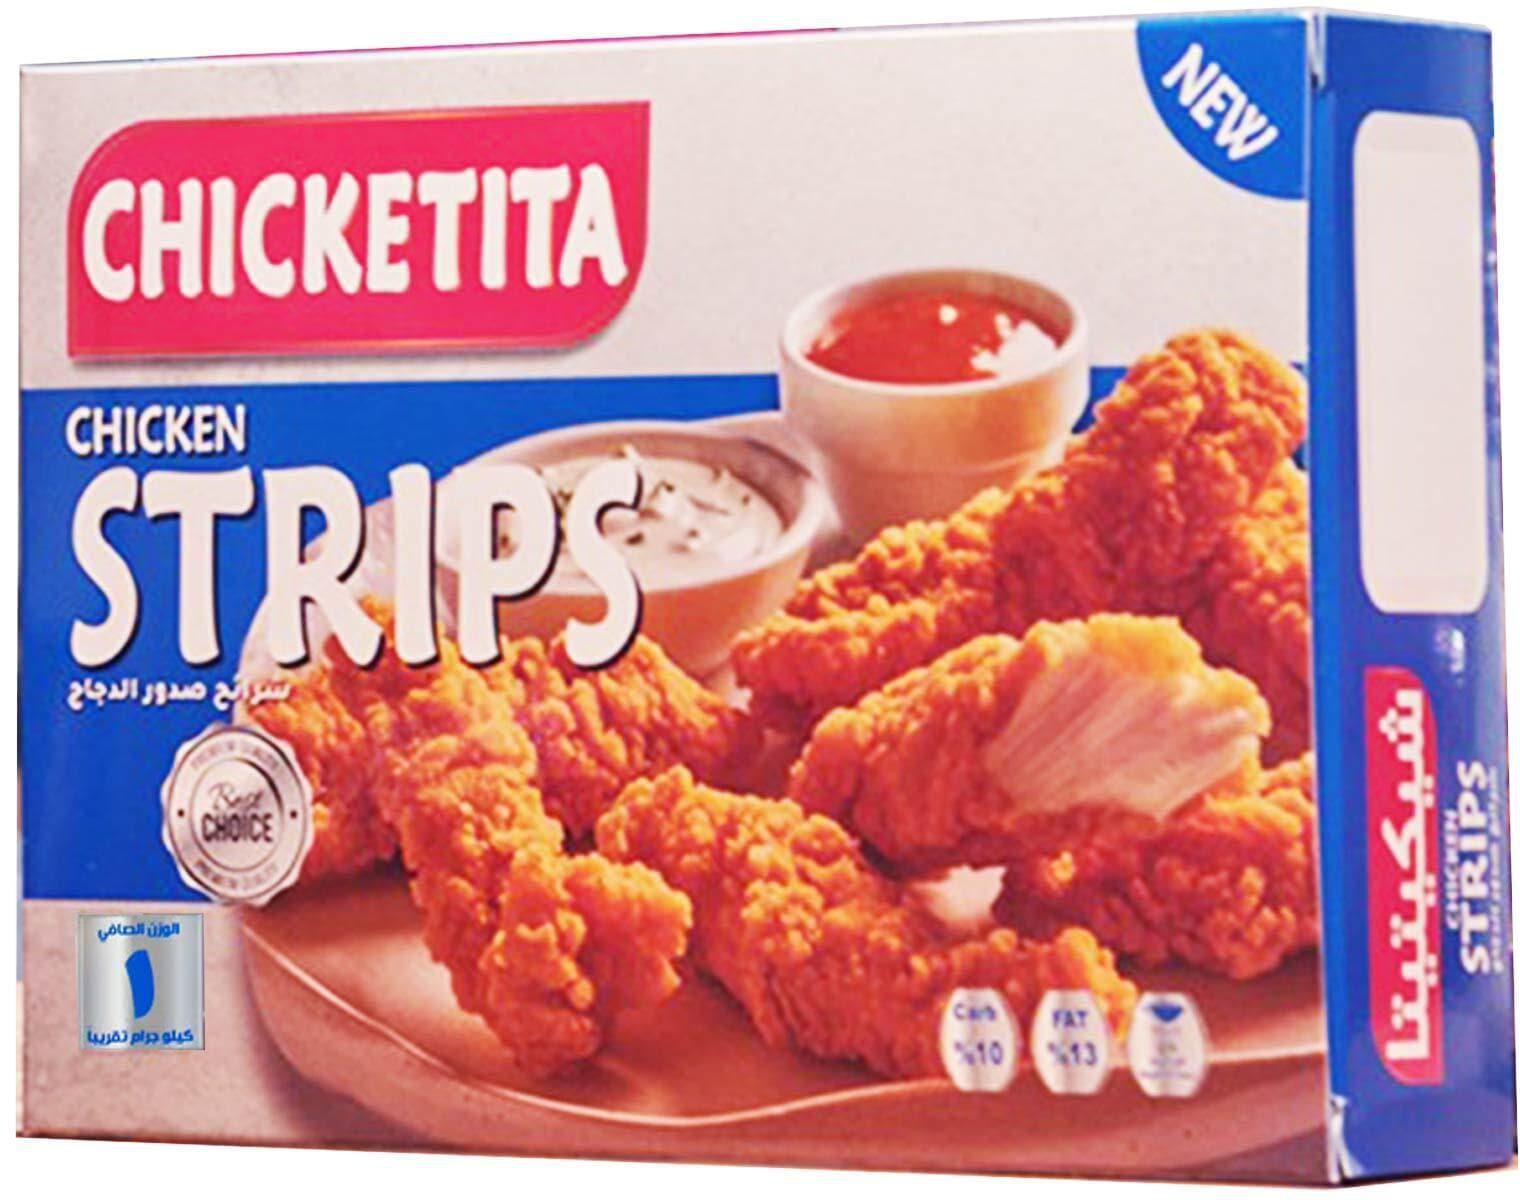 Chicketita Chicken Strips - 1 kg